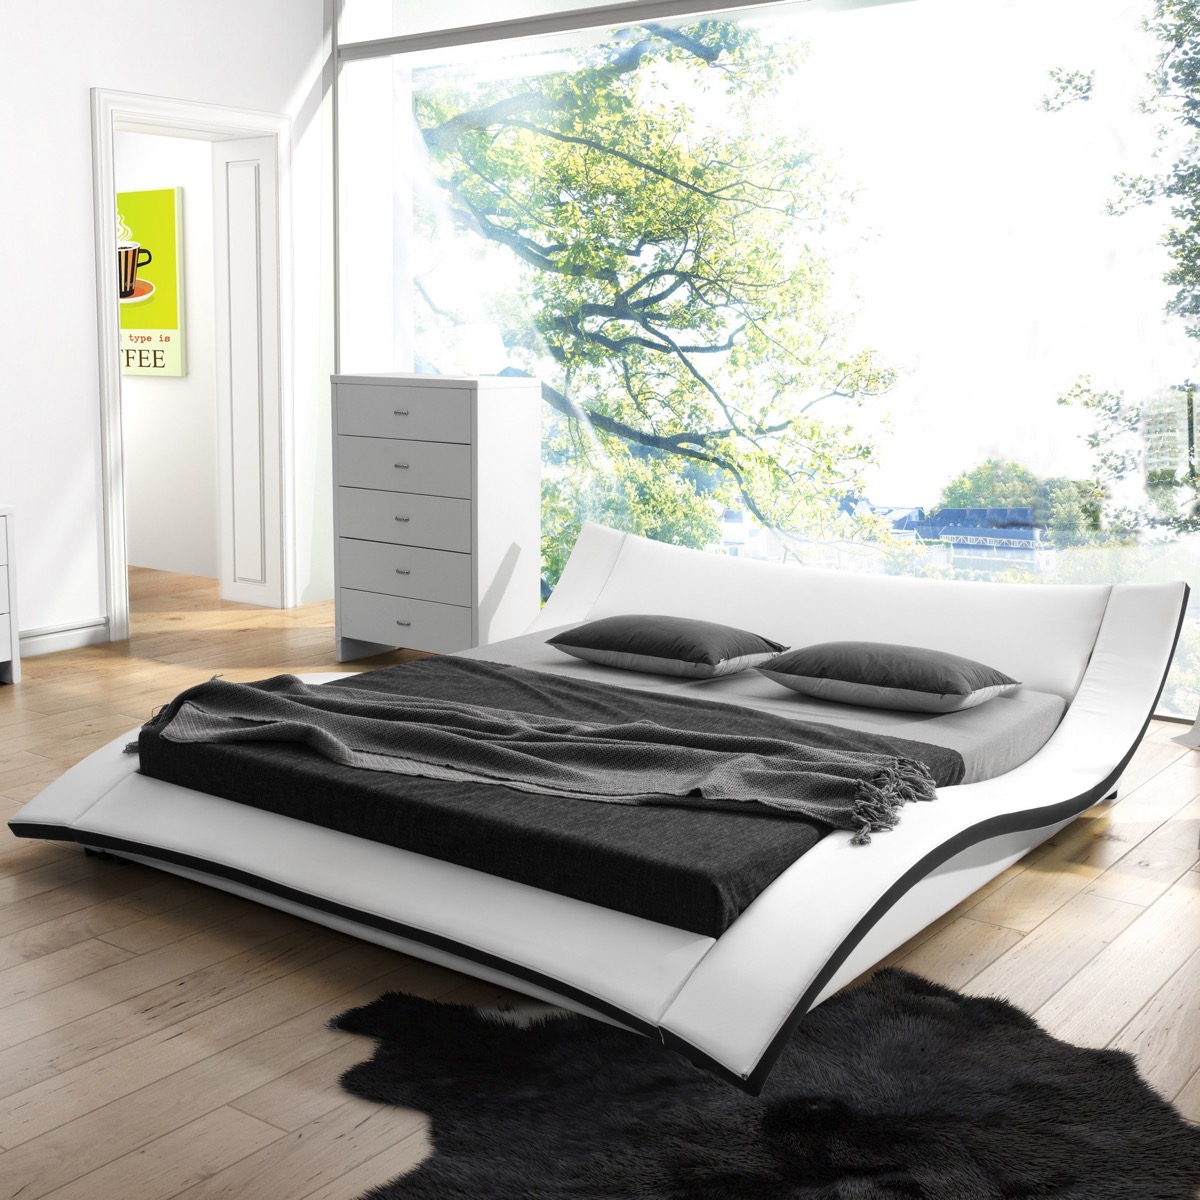 15 thiết kế giường ngủ sang chảnh lại thoải mái khiến bạn không muốn rời phòng ngủ chút nào - Ảnh 1.